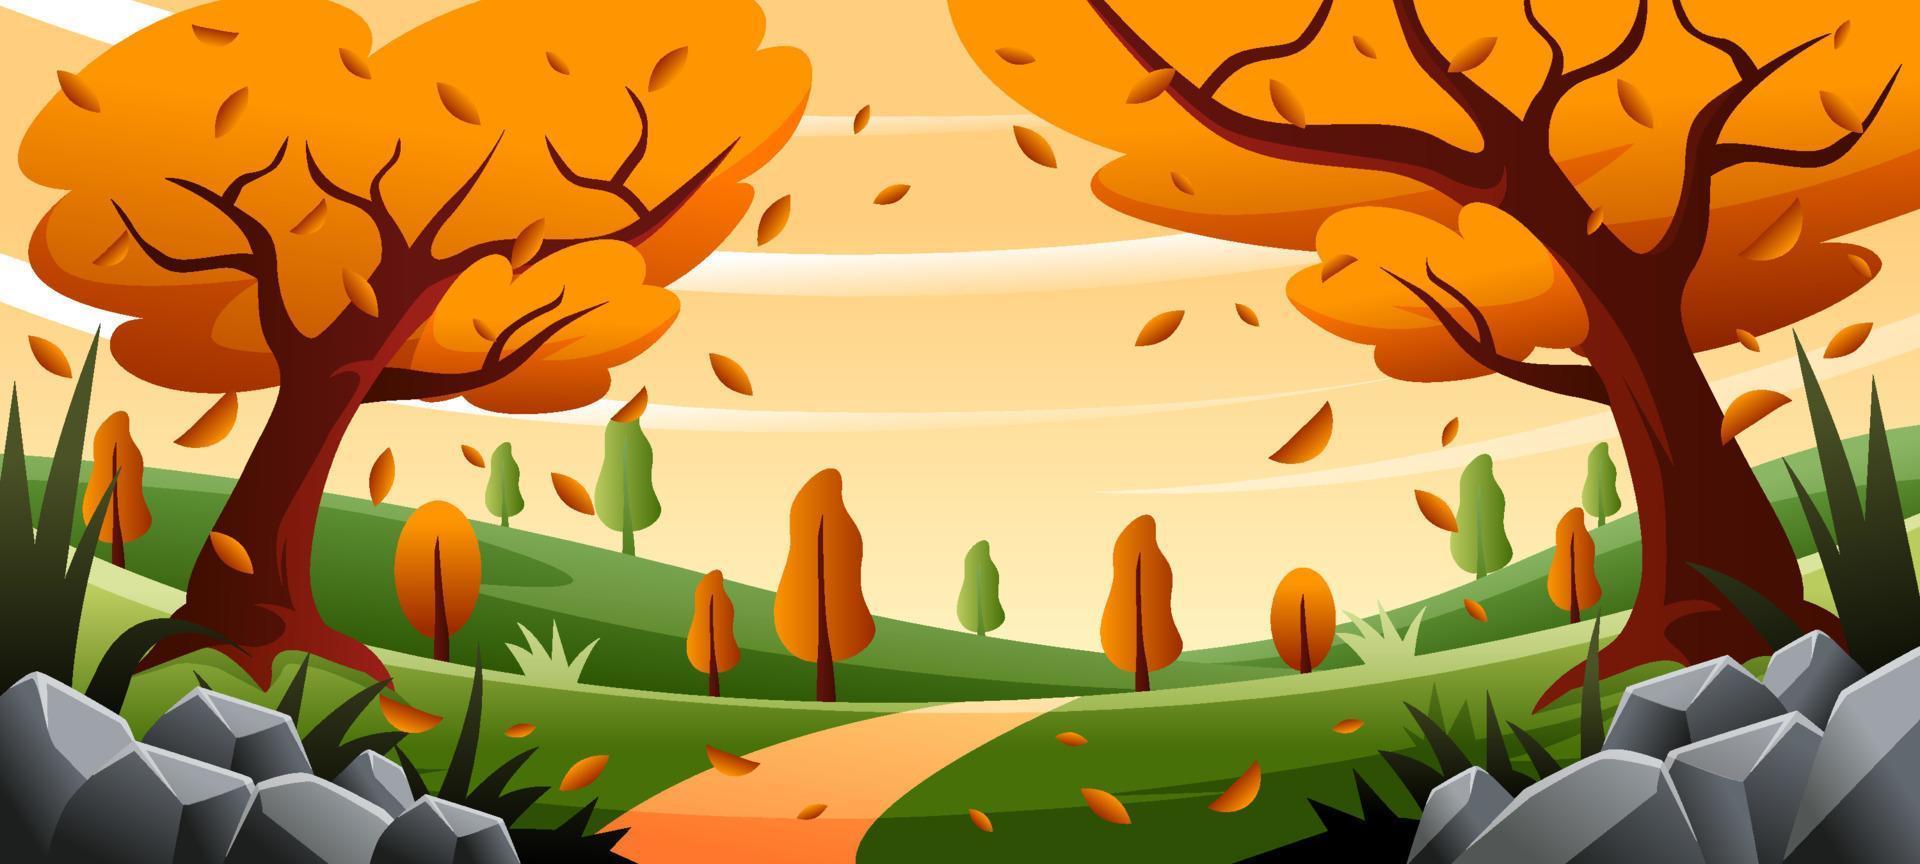 landschap in de herfst met gevallen bladeren vector